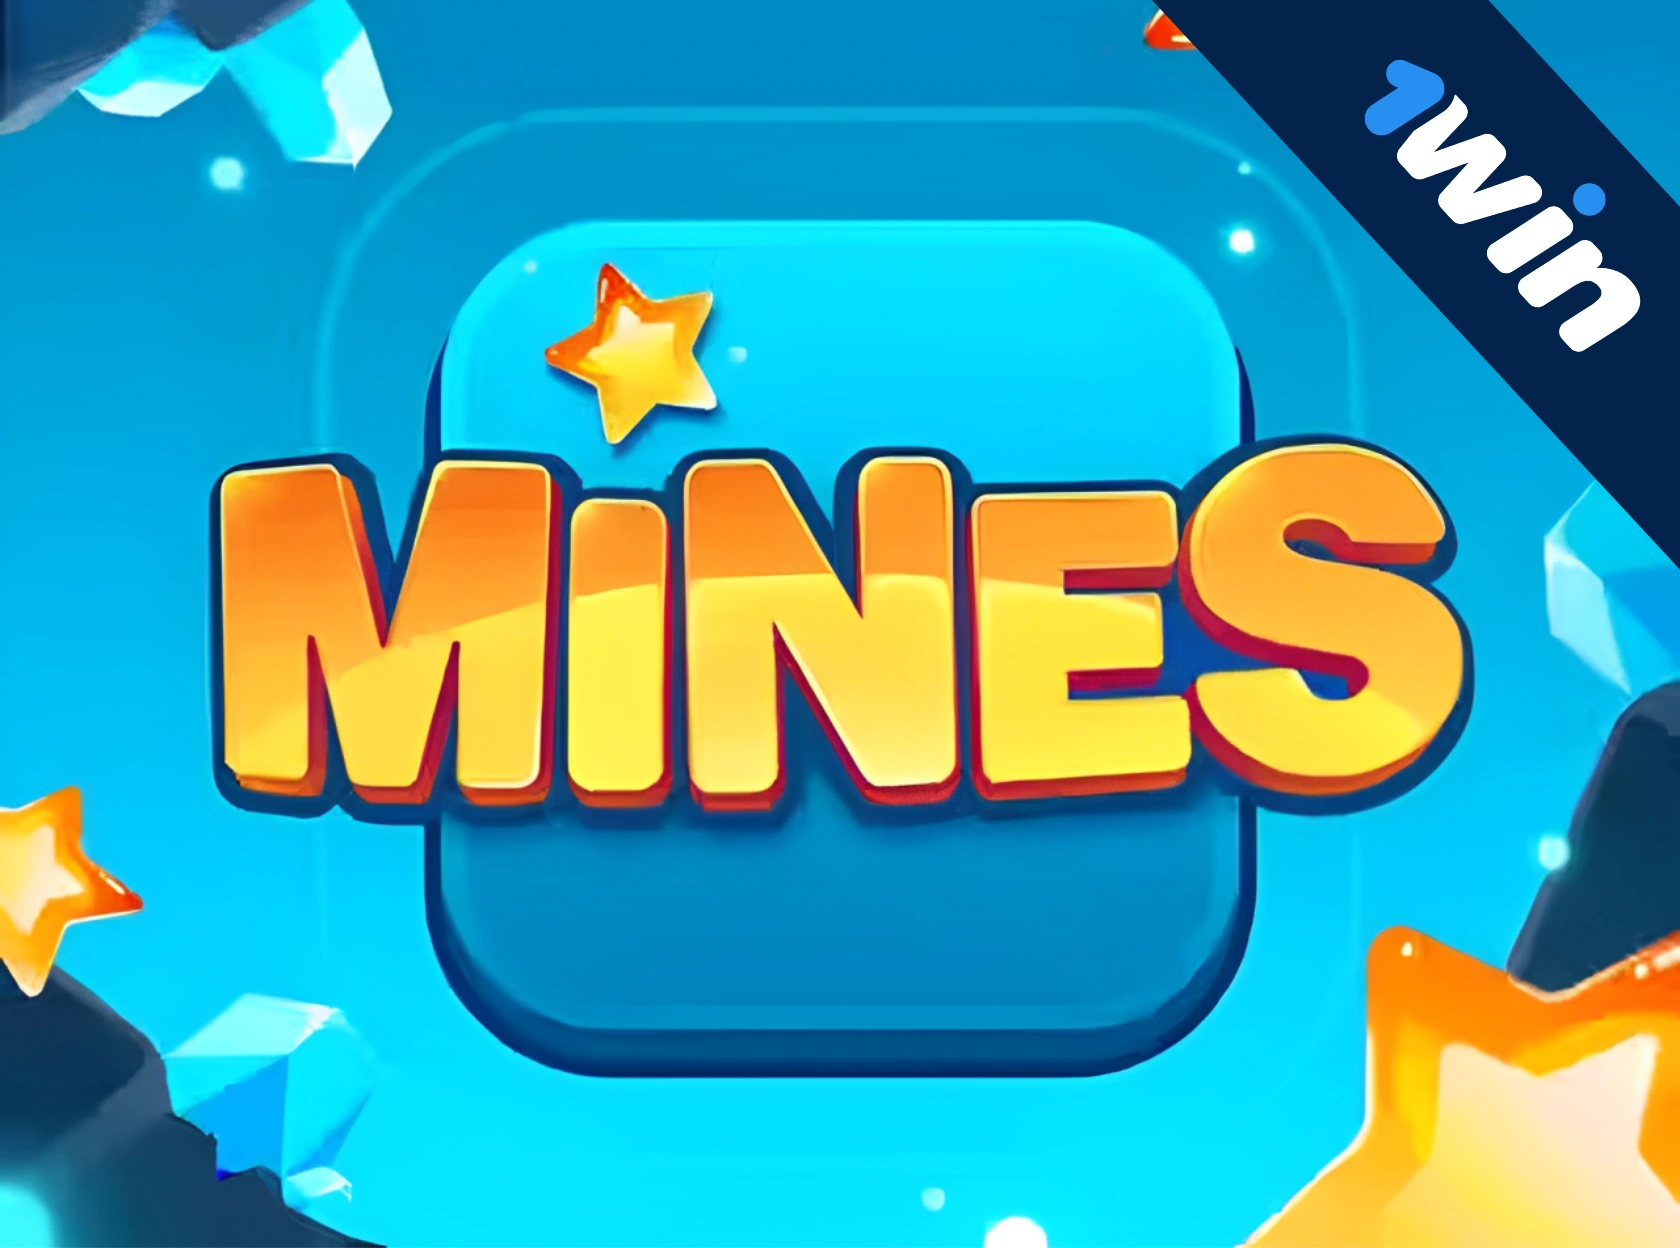 1win Mines - पैसे के लिए खेल ऑनलाइन खेलना